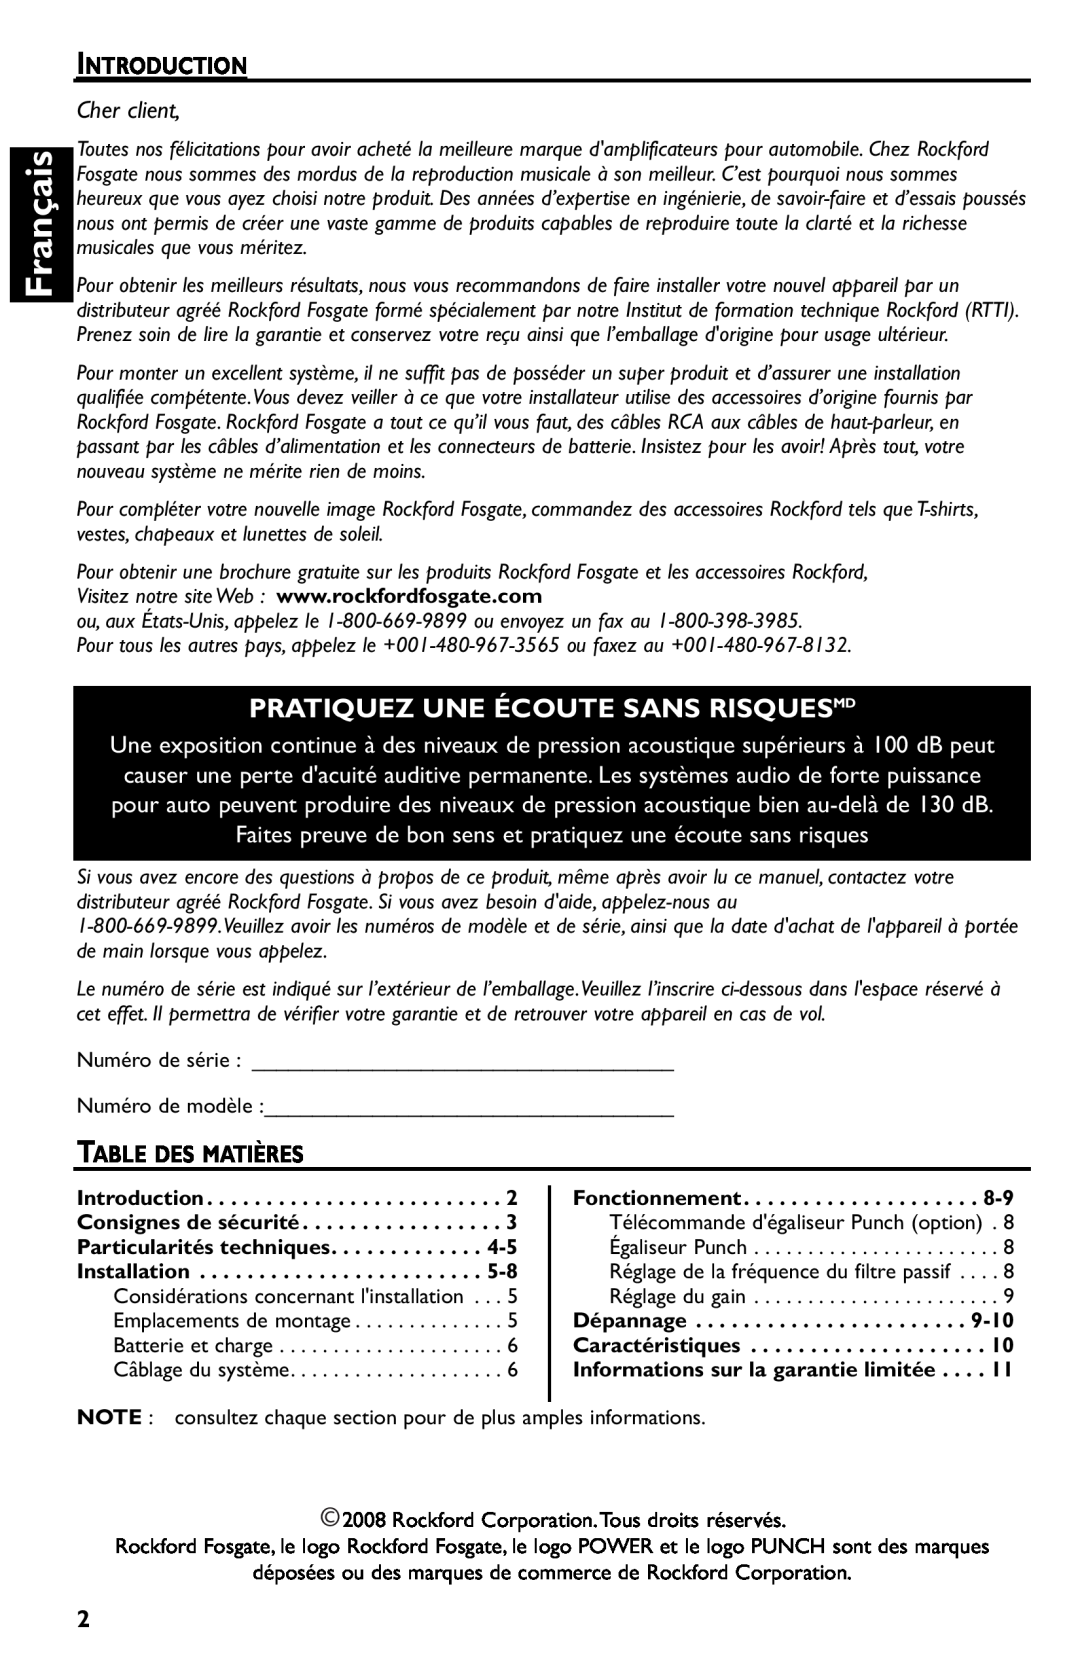 Rockford Fosgate p3002 manual Français, Pratiquez Une Écoute Sans Risquesmd, Introduction, Cher client, Table Des Matières 